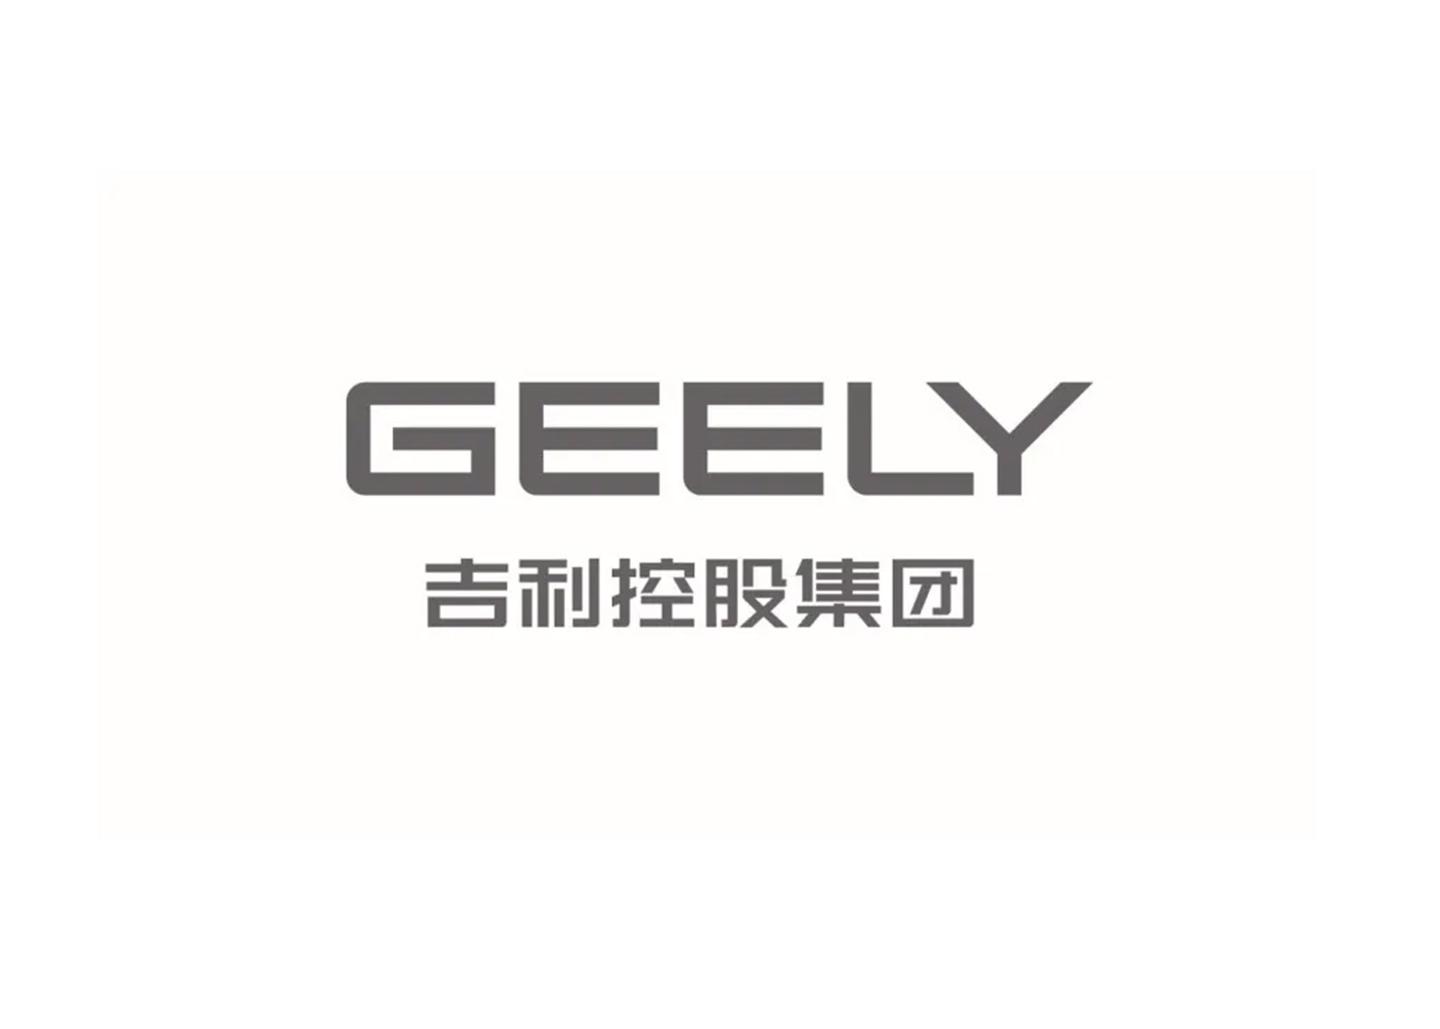 吉利集团 logo图片